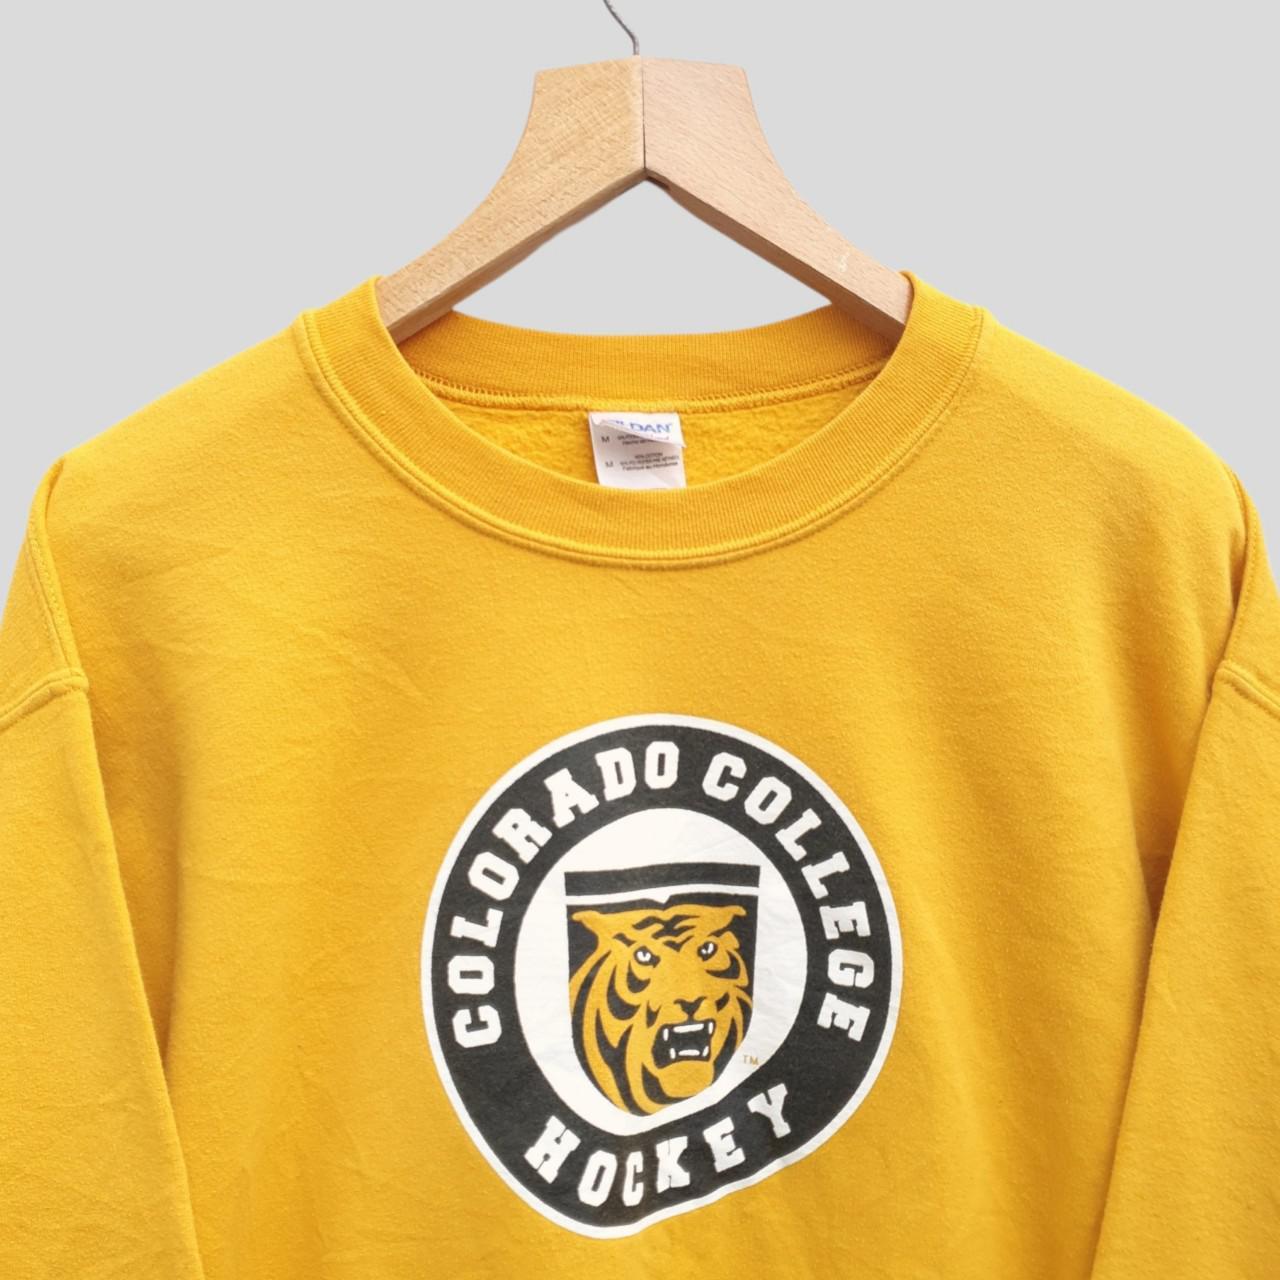 Vintage American Colorado College Hockey Sweatshirt... - Depop